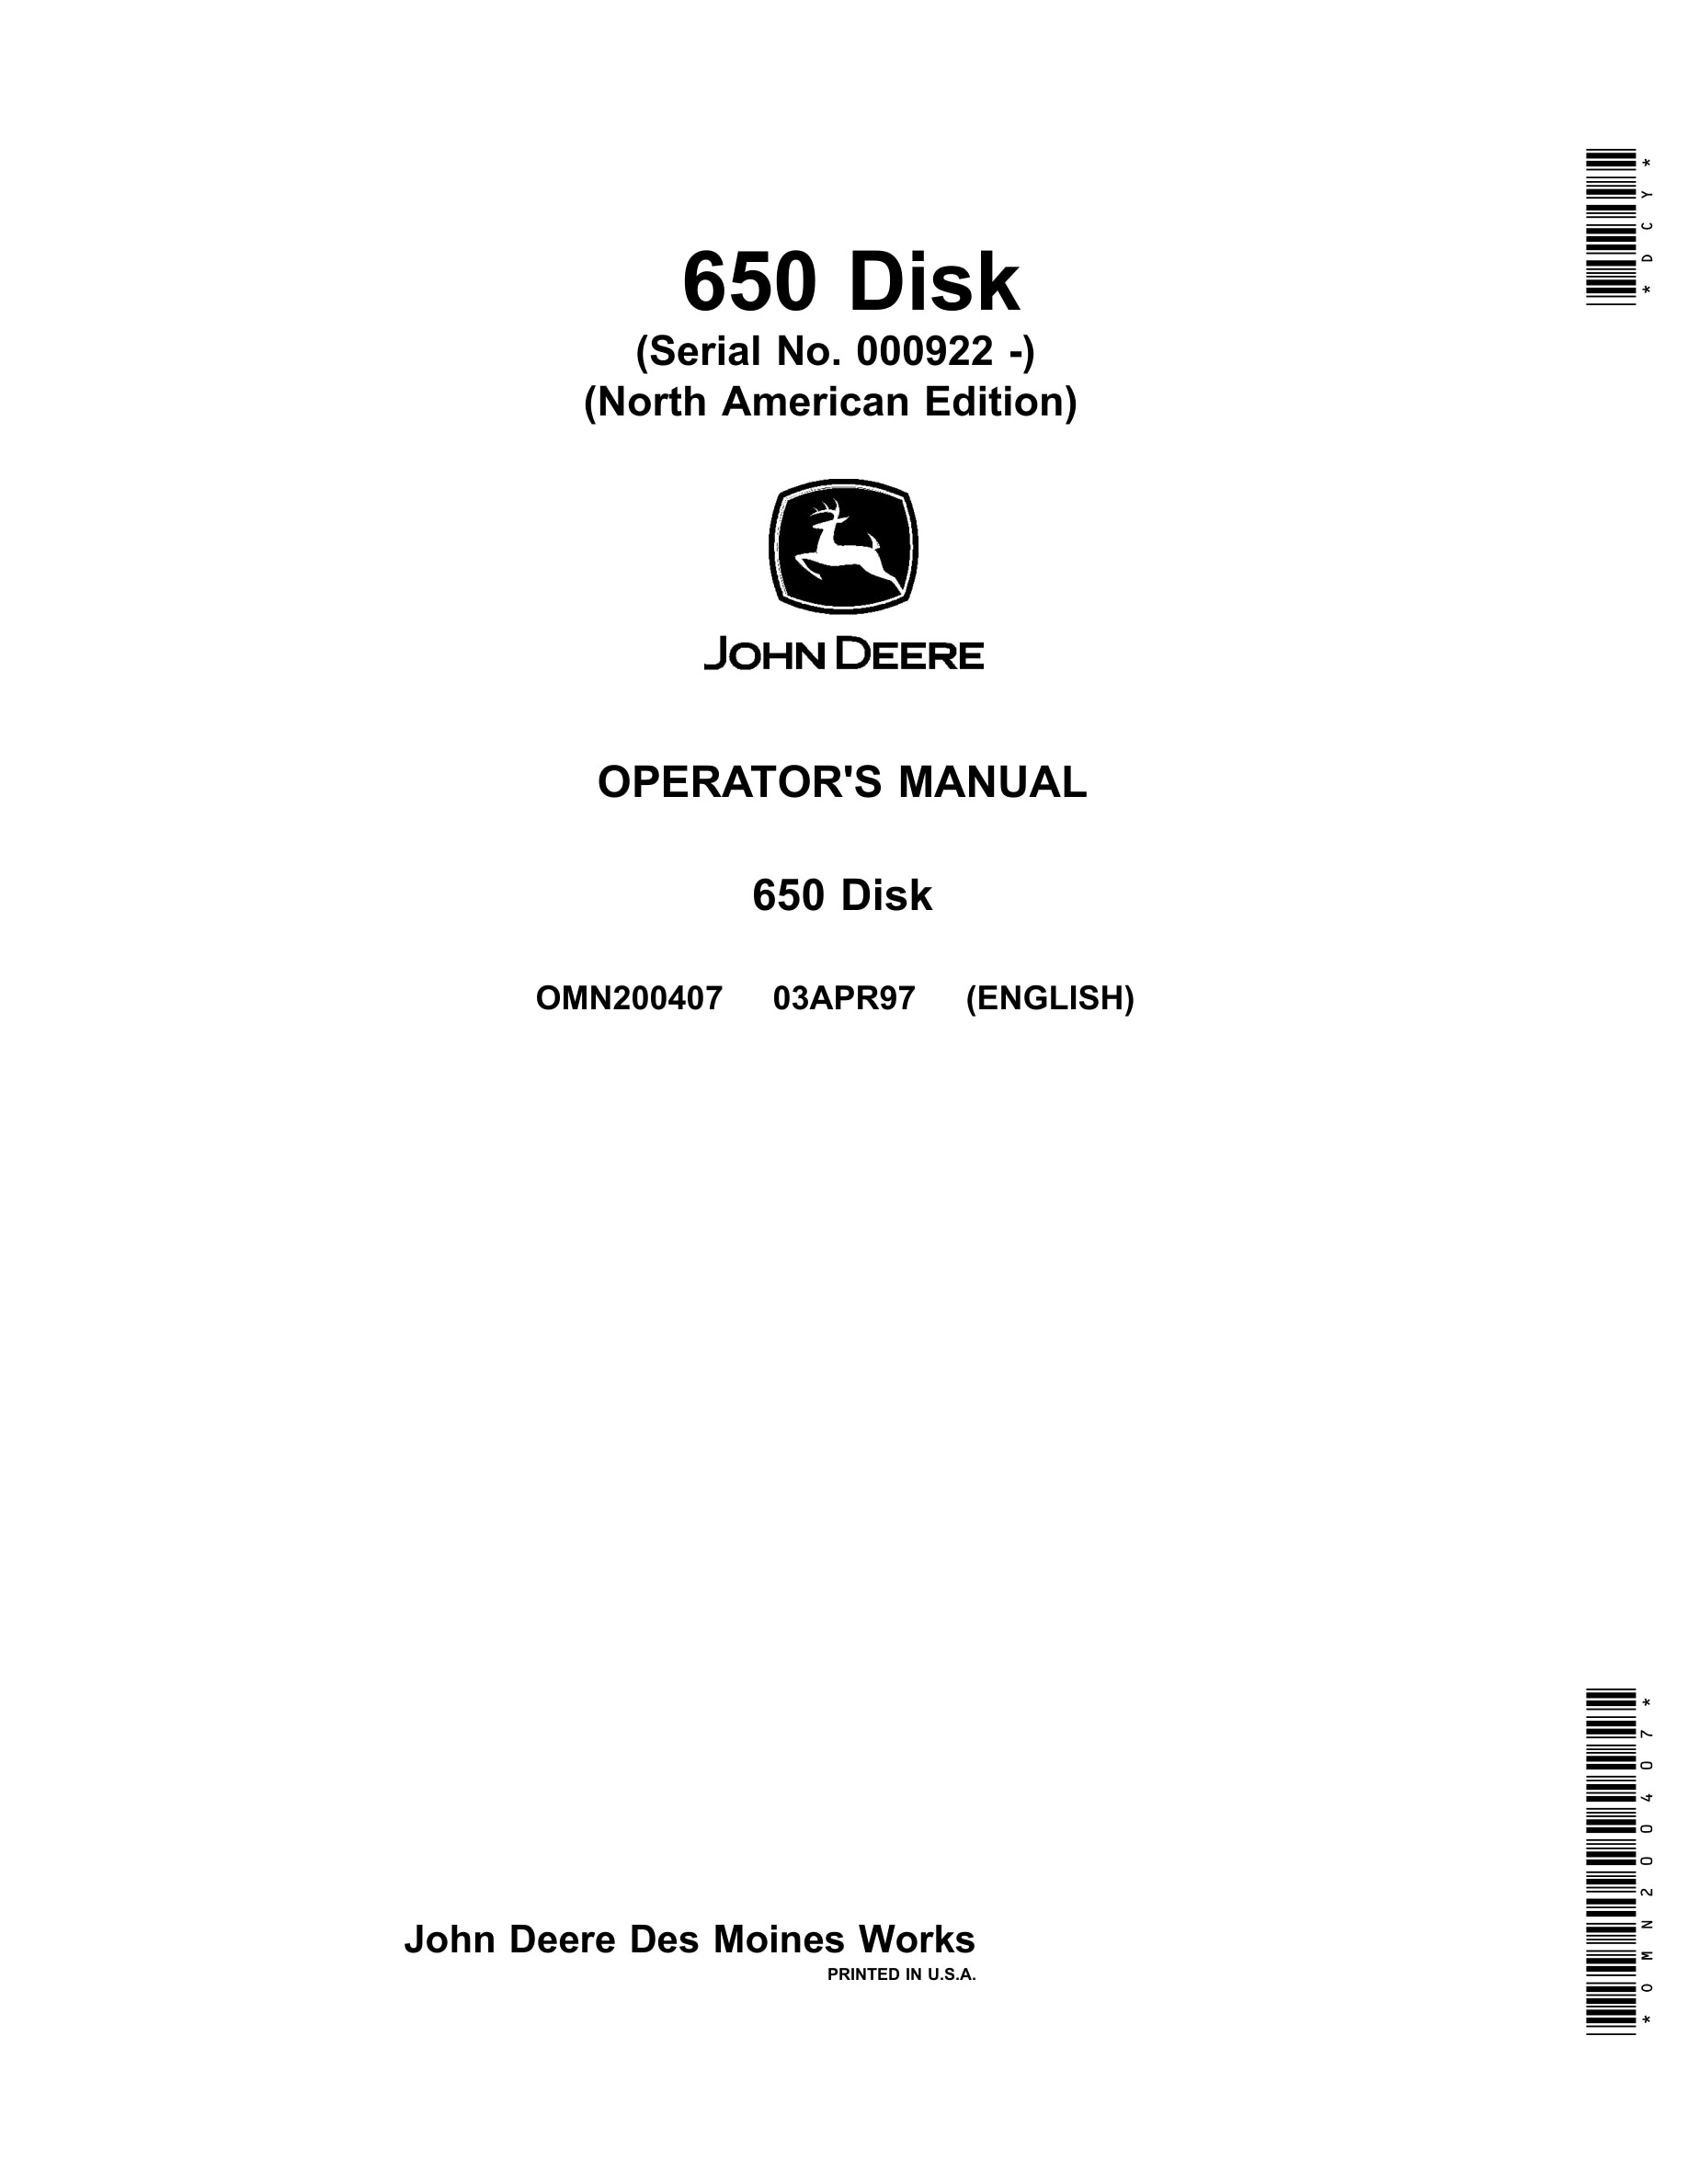 John Deere 650 Disk Operator Manual OMN200407-1